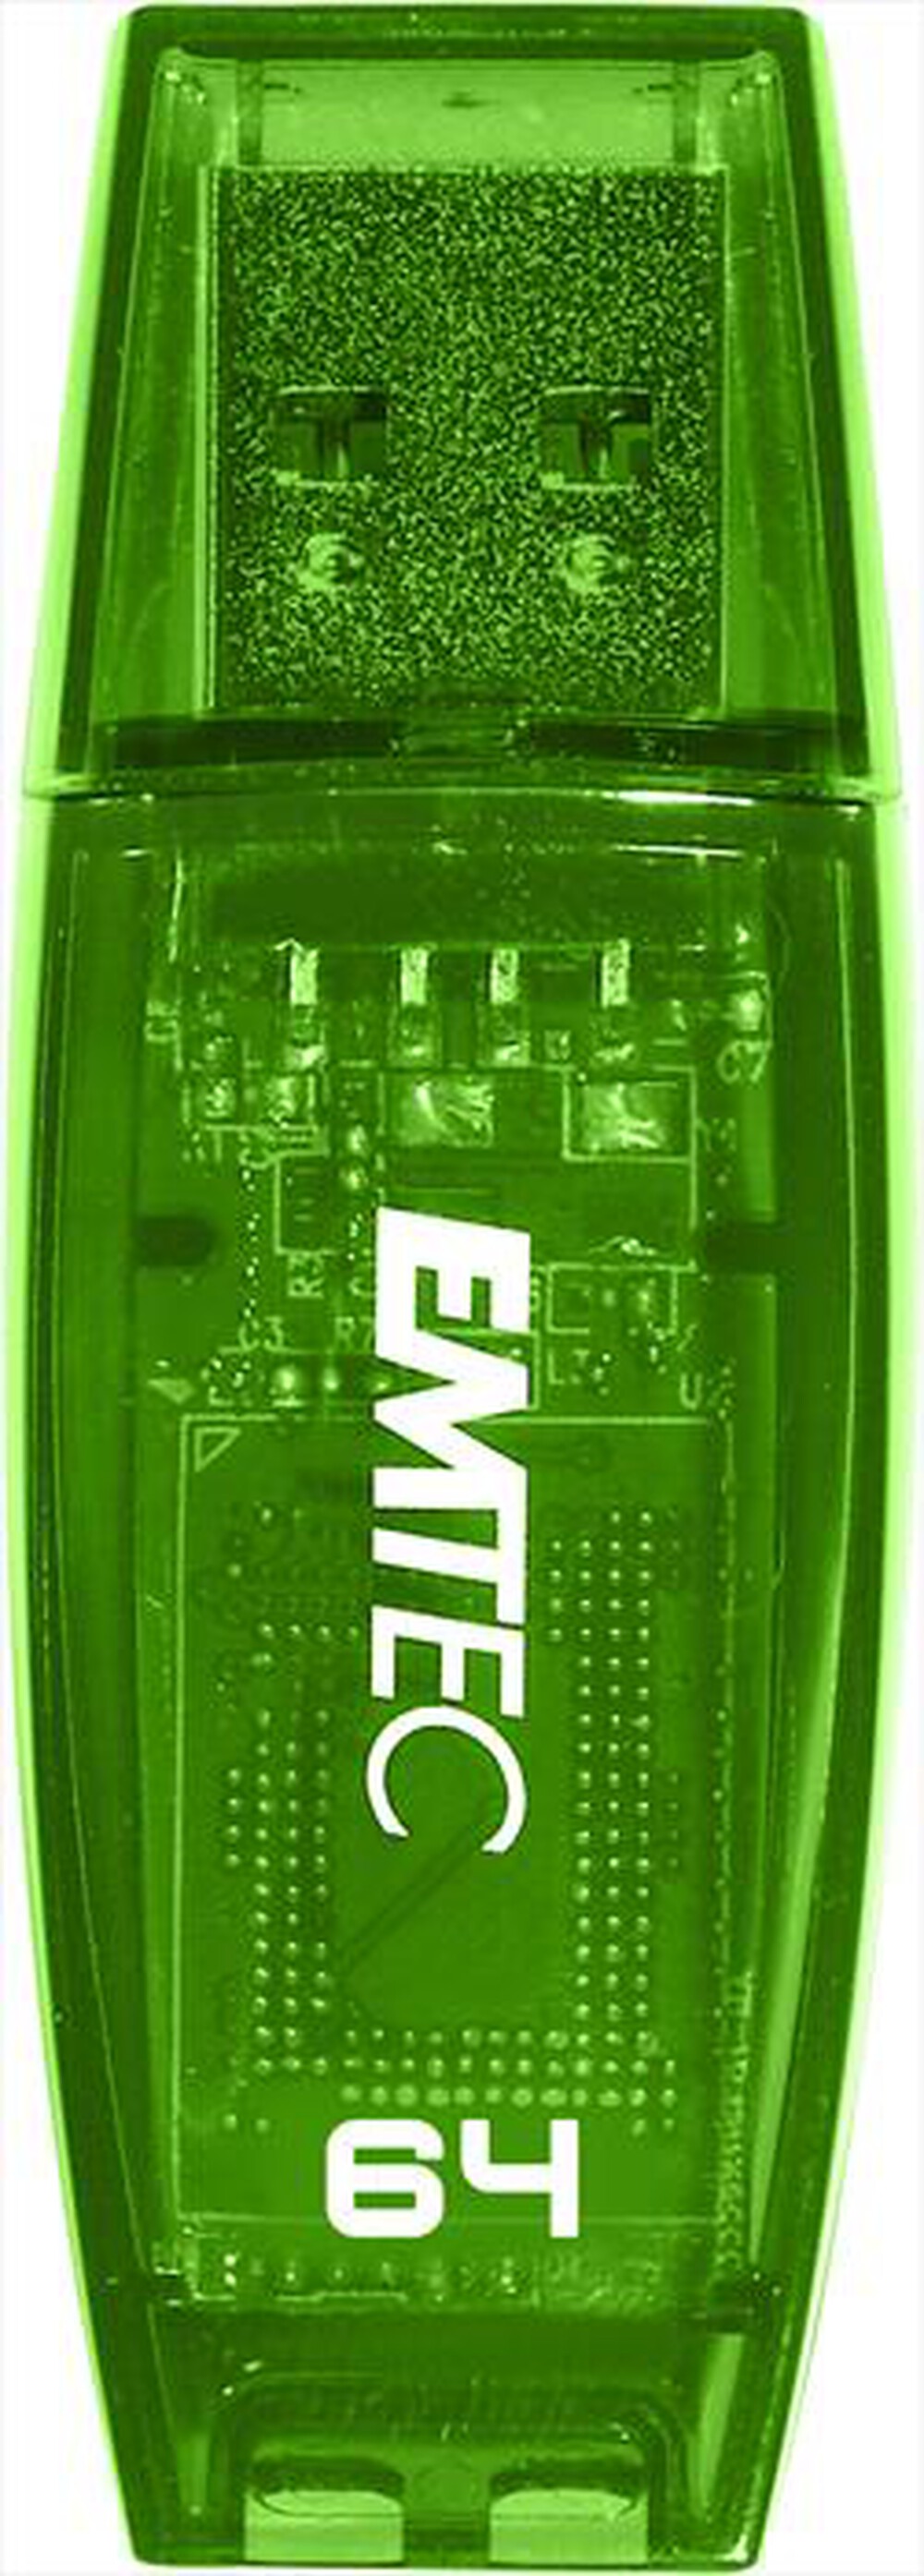 "EMTEC - COLOR MIX C410 64GB USB2.0 - Verde"